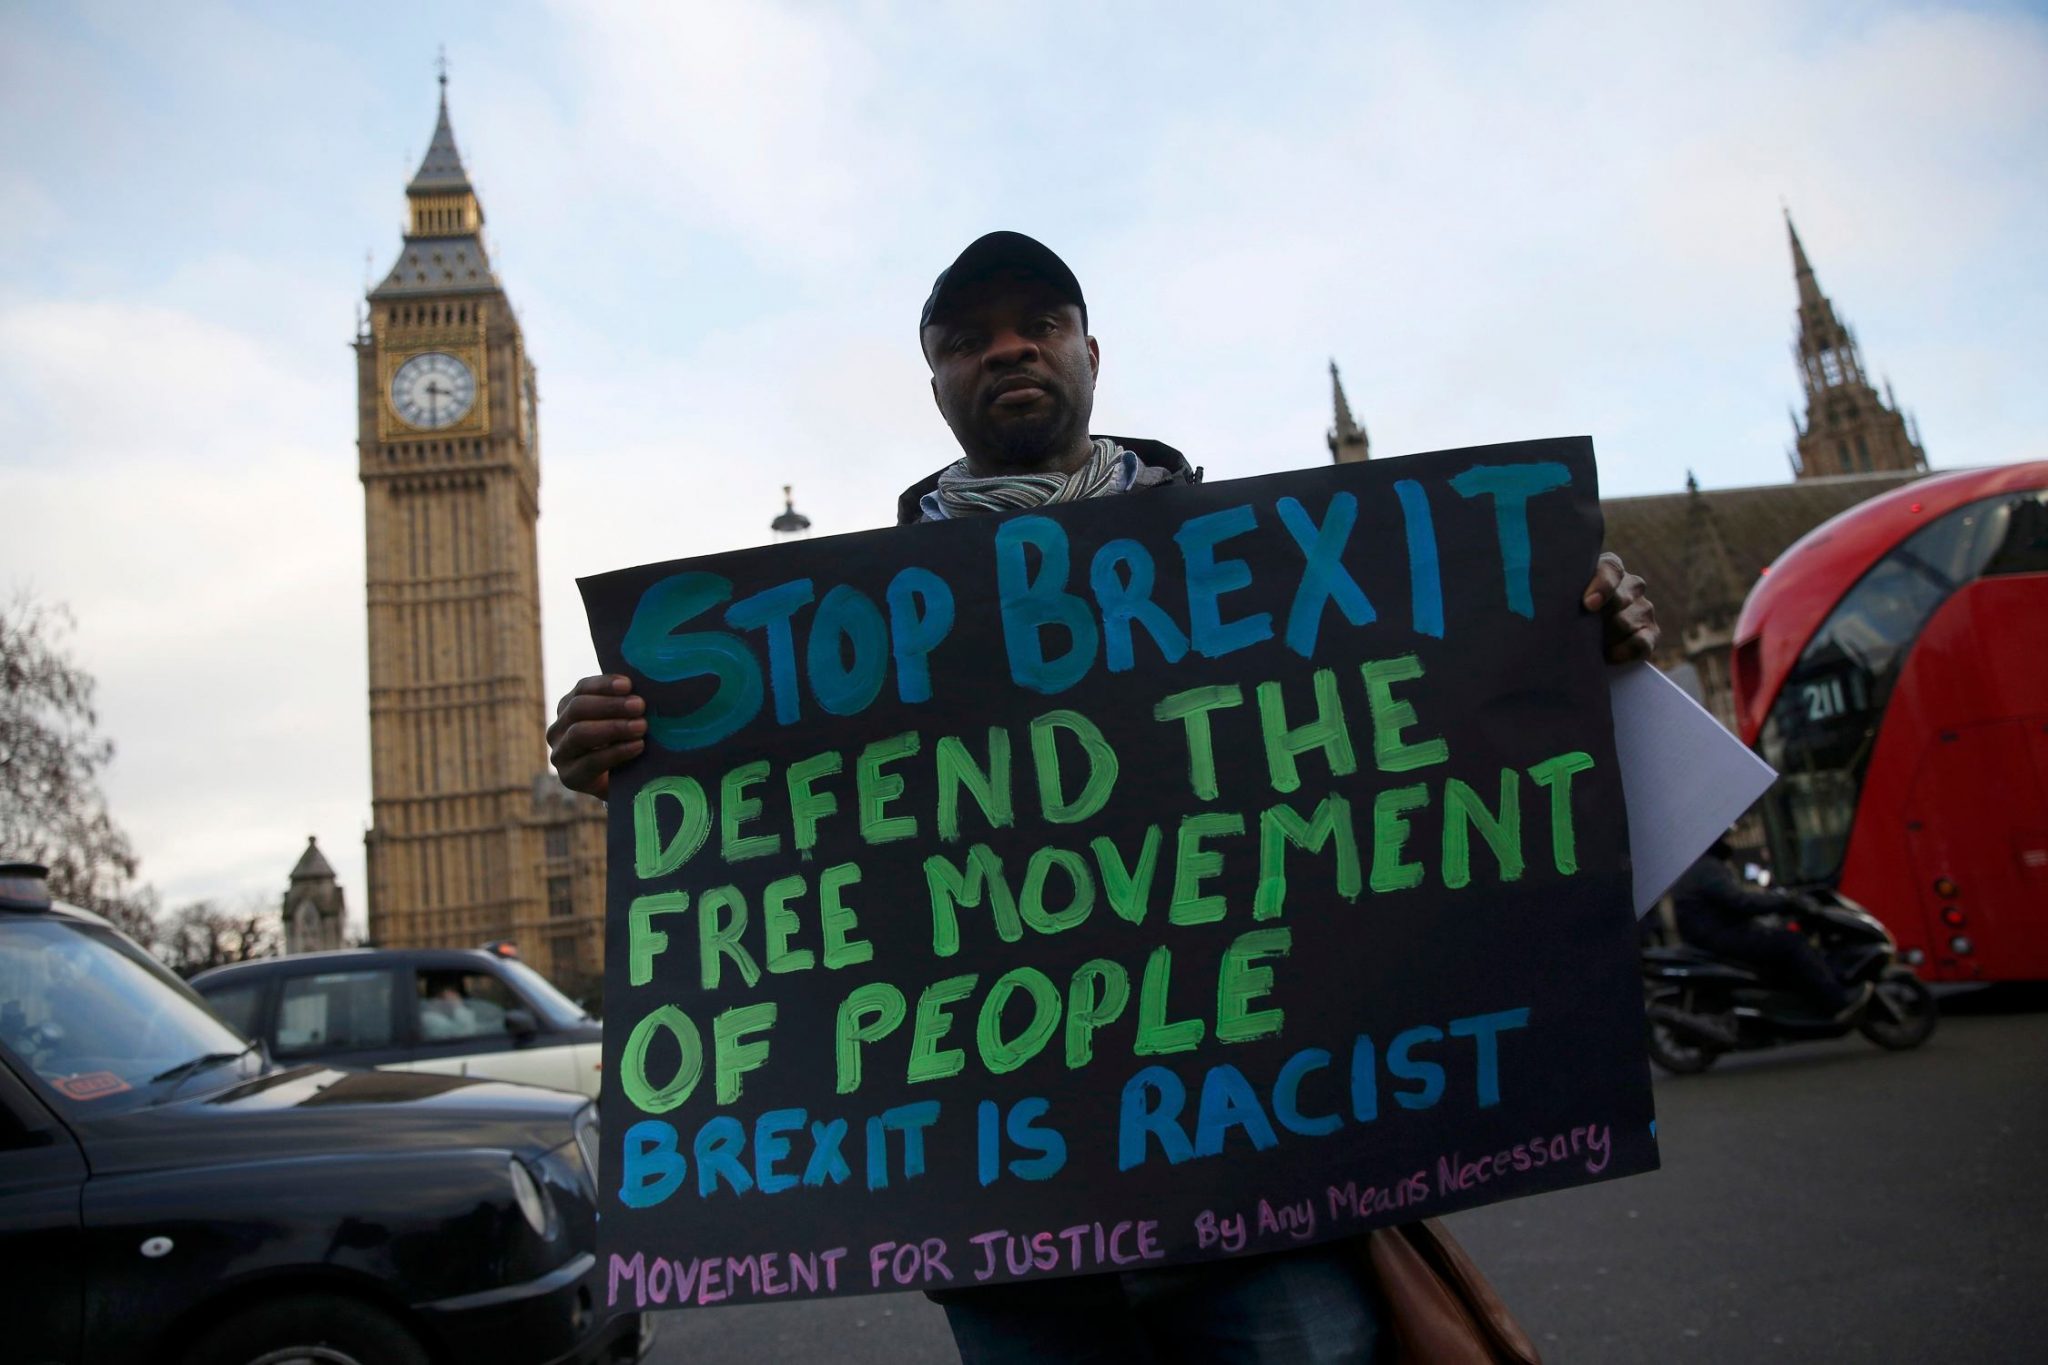 Un ciudadano que se opone al Brexit muestra una pancarta de rechazo por fuera de la Cámara de los Comunes | FOTO: REUTERS/Neil Hall